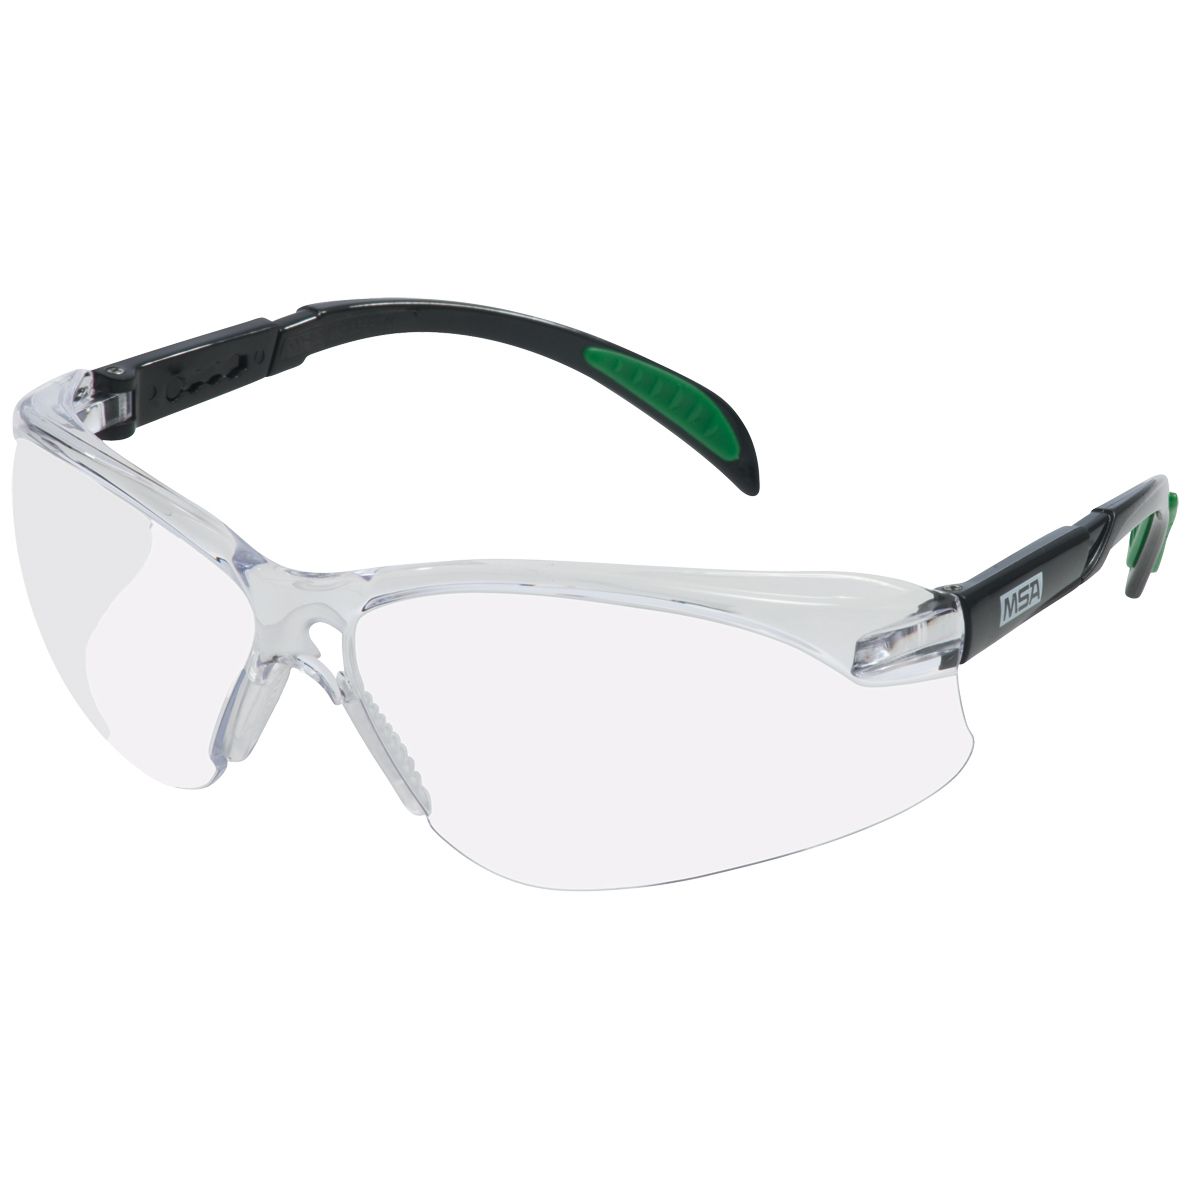 MSA Blockz Schutzbrille - kratz- & beschlagfest dank TuffStuff-Beschichtung - EN 166/170 - Schwarz/Klar